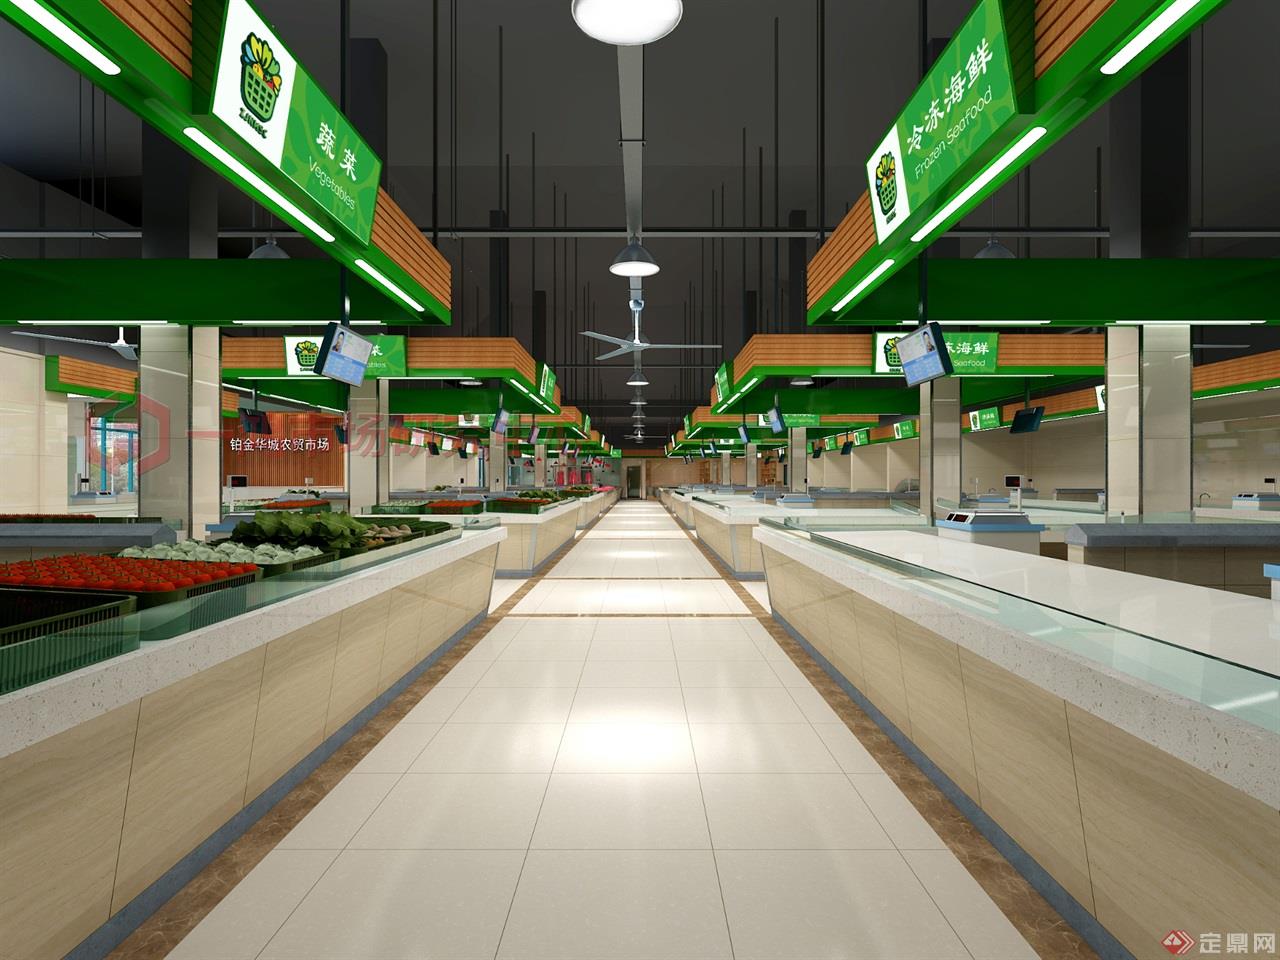 华城农贸市场设计—蔬菜区—一鸿市场研究中心